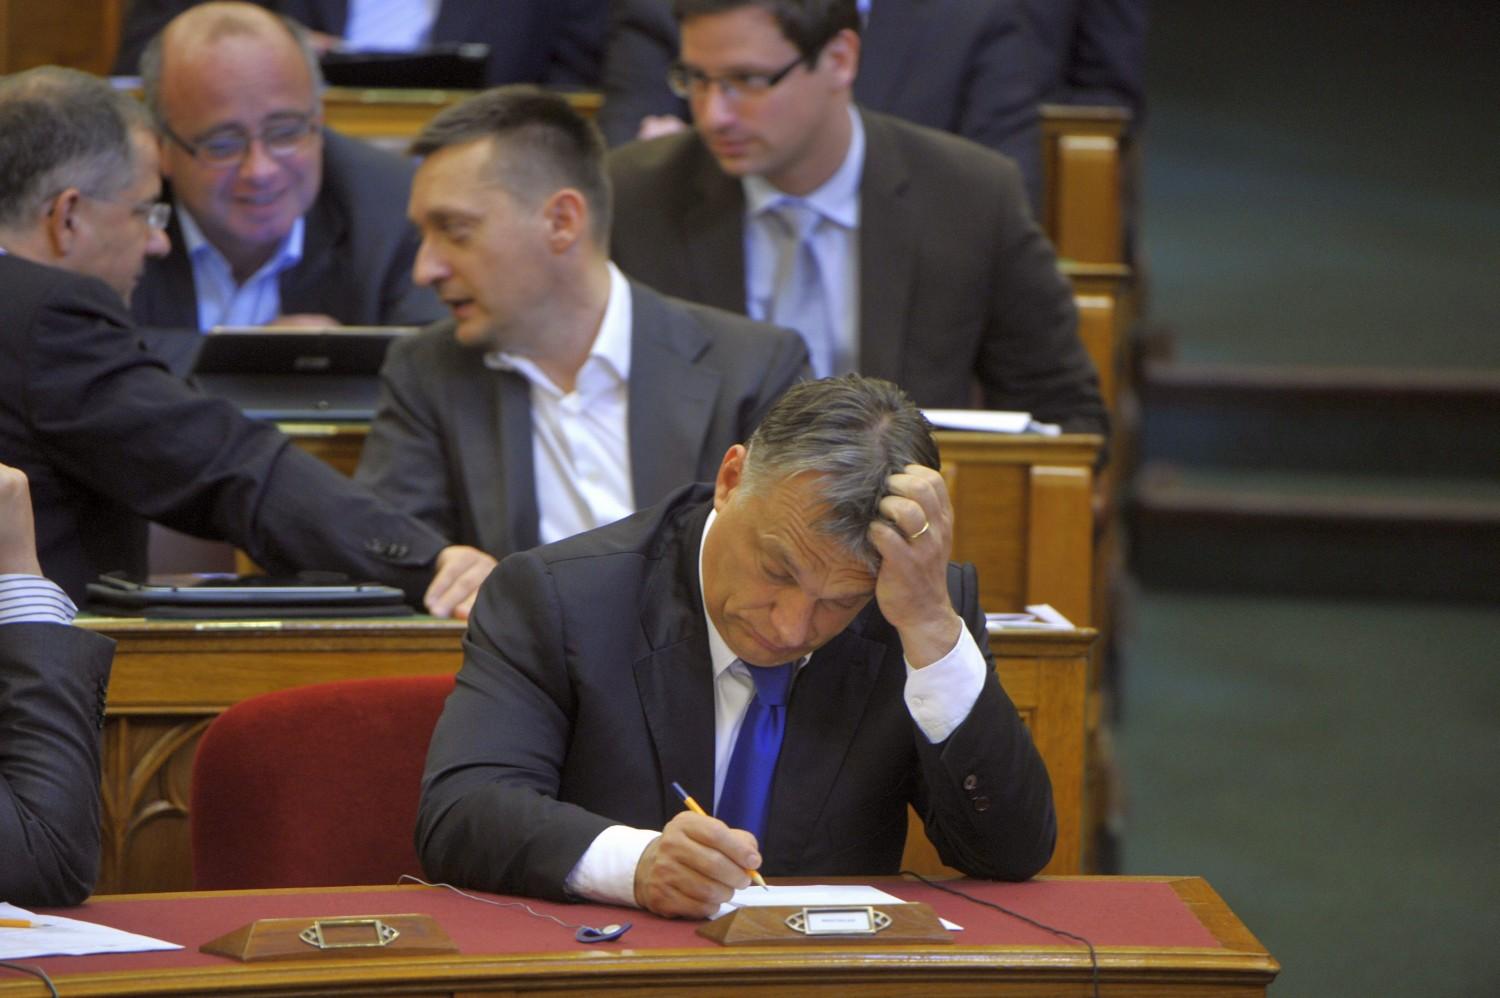 Komoly fejfájást okoz Orbánnak az ügy